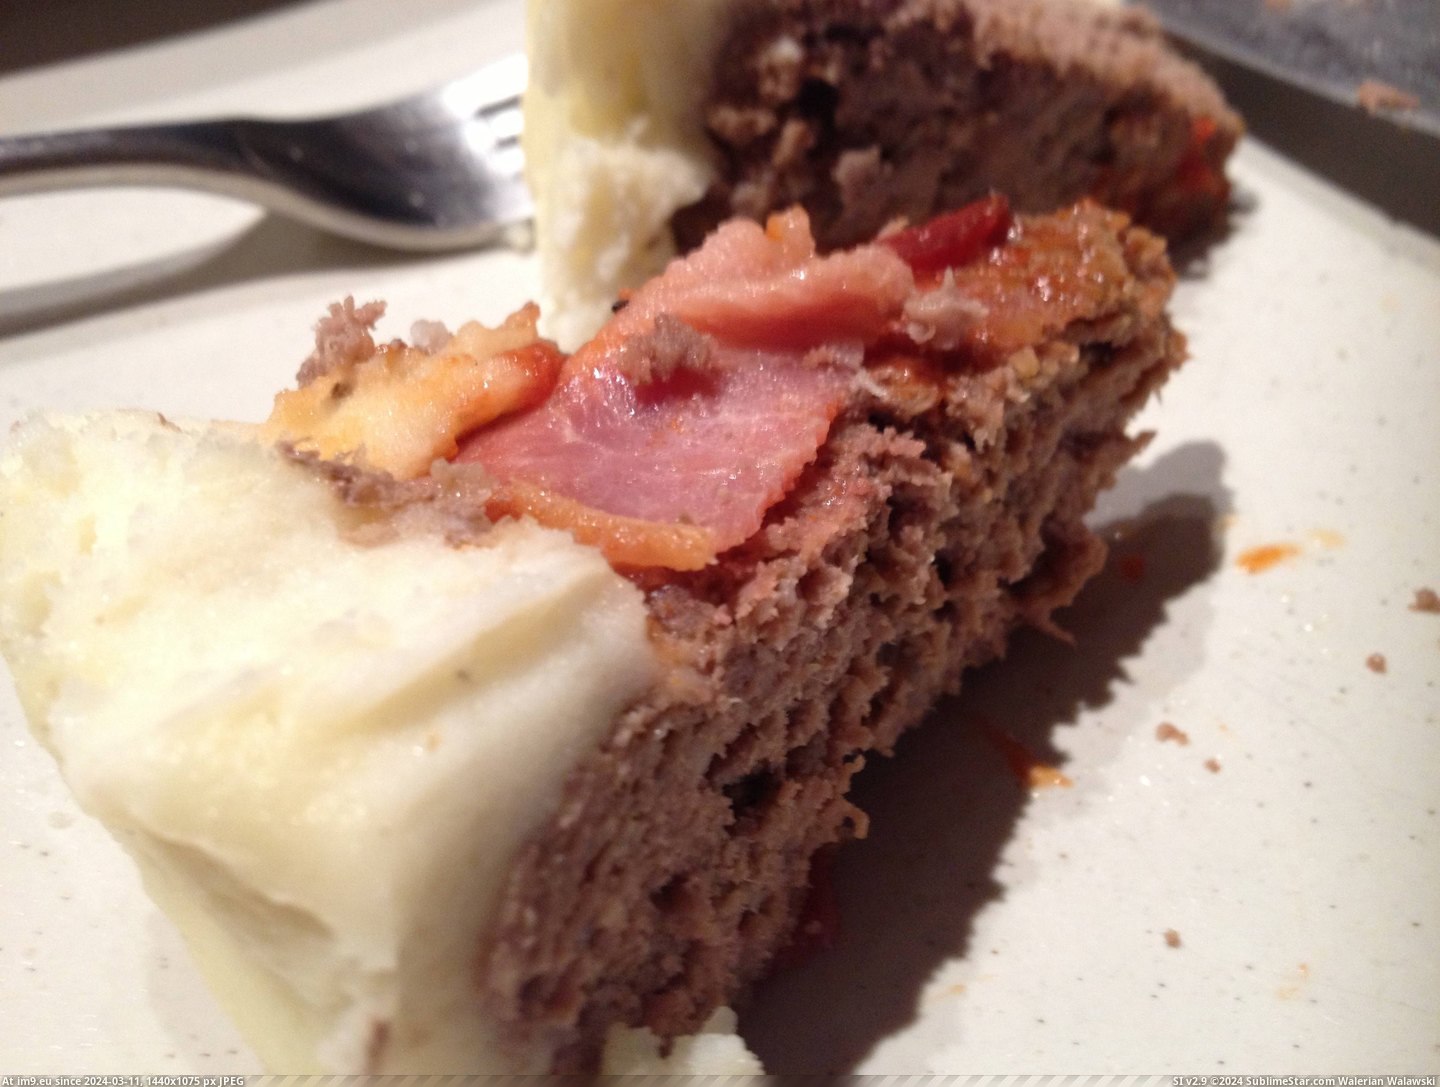  #Meatcake  [Pics] Meatcake 14 Pic. (Obraz z album My r/PICS favs))